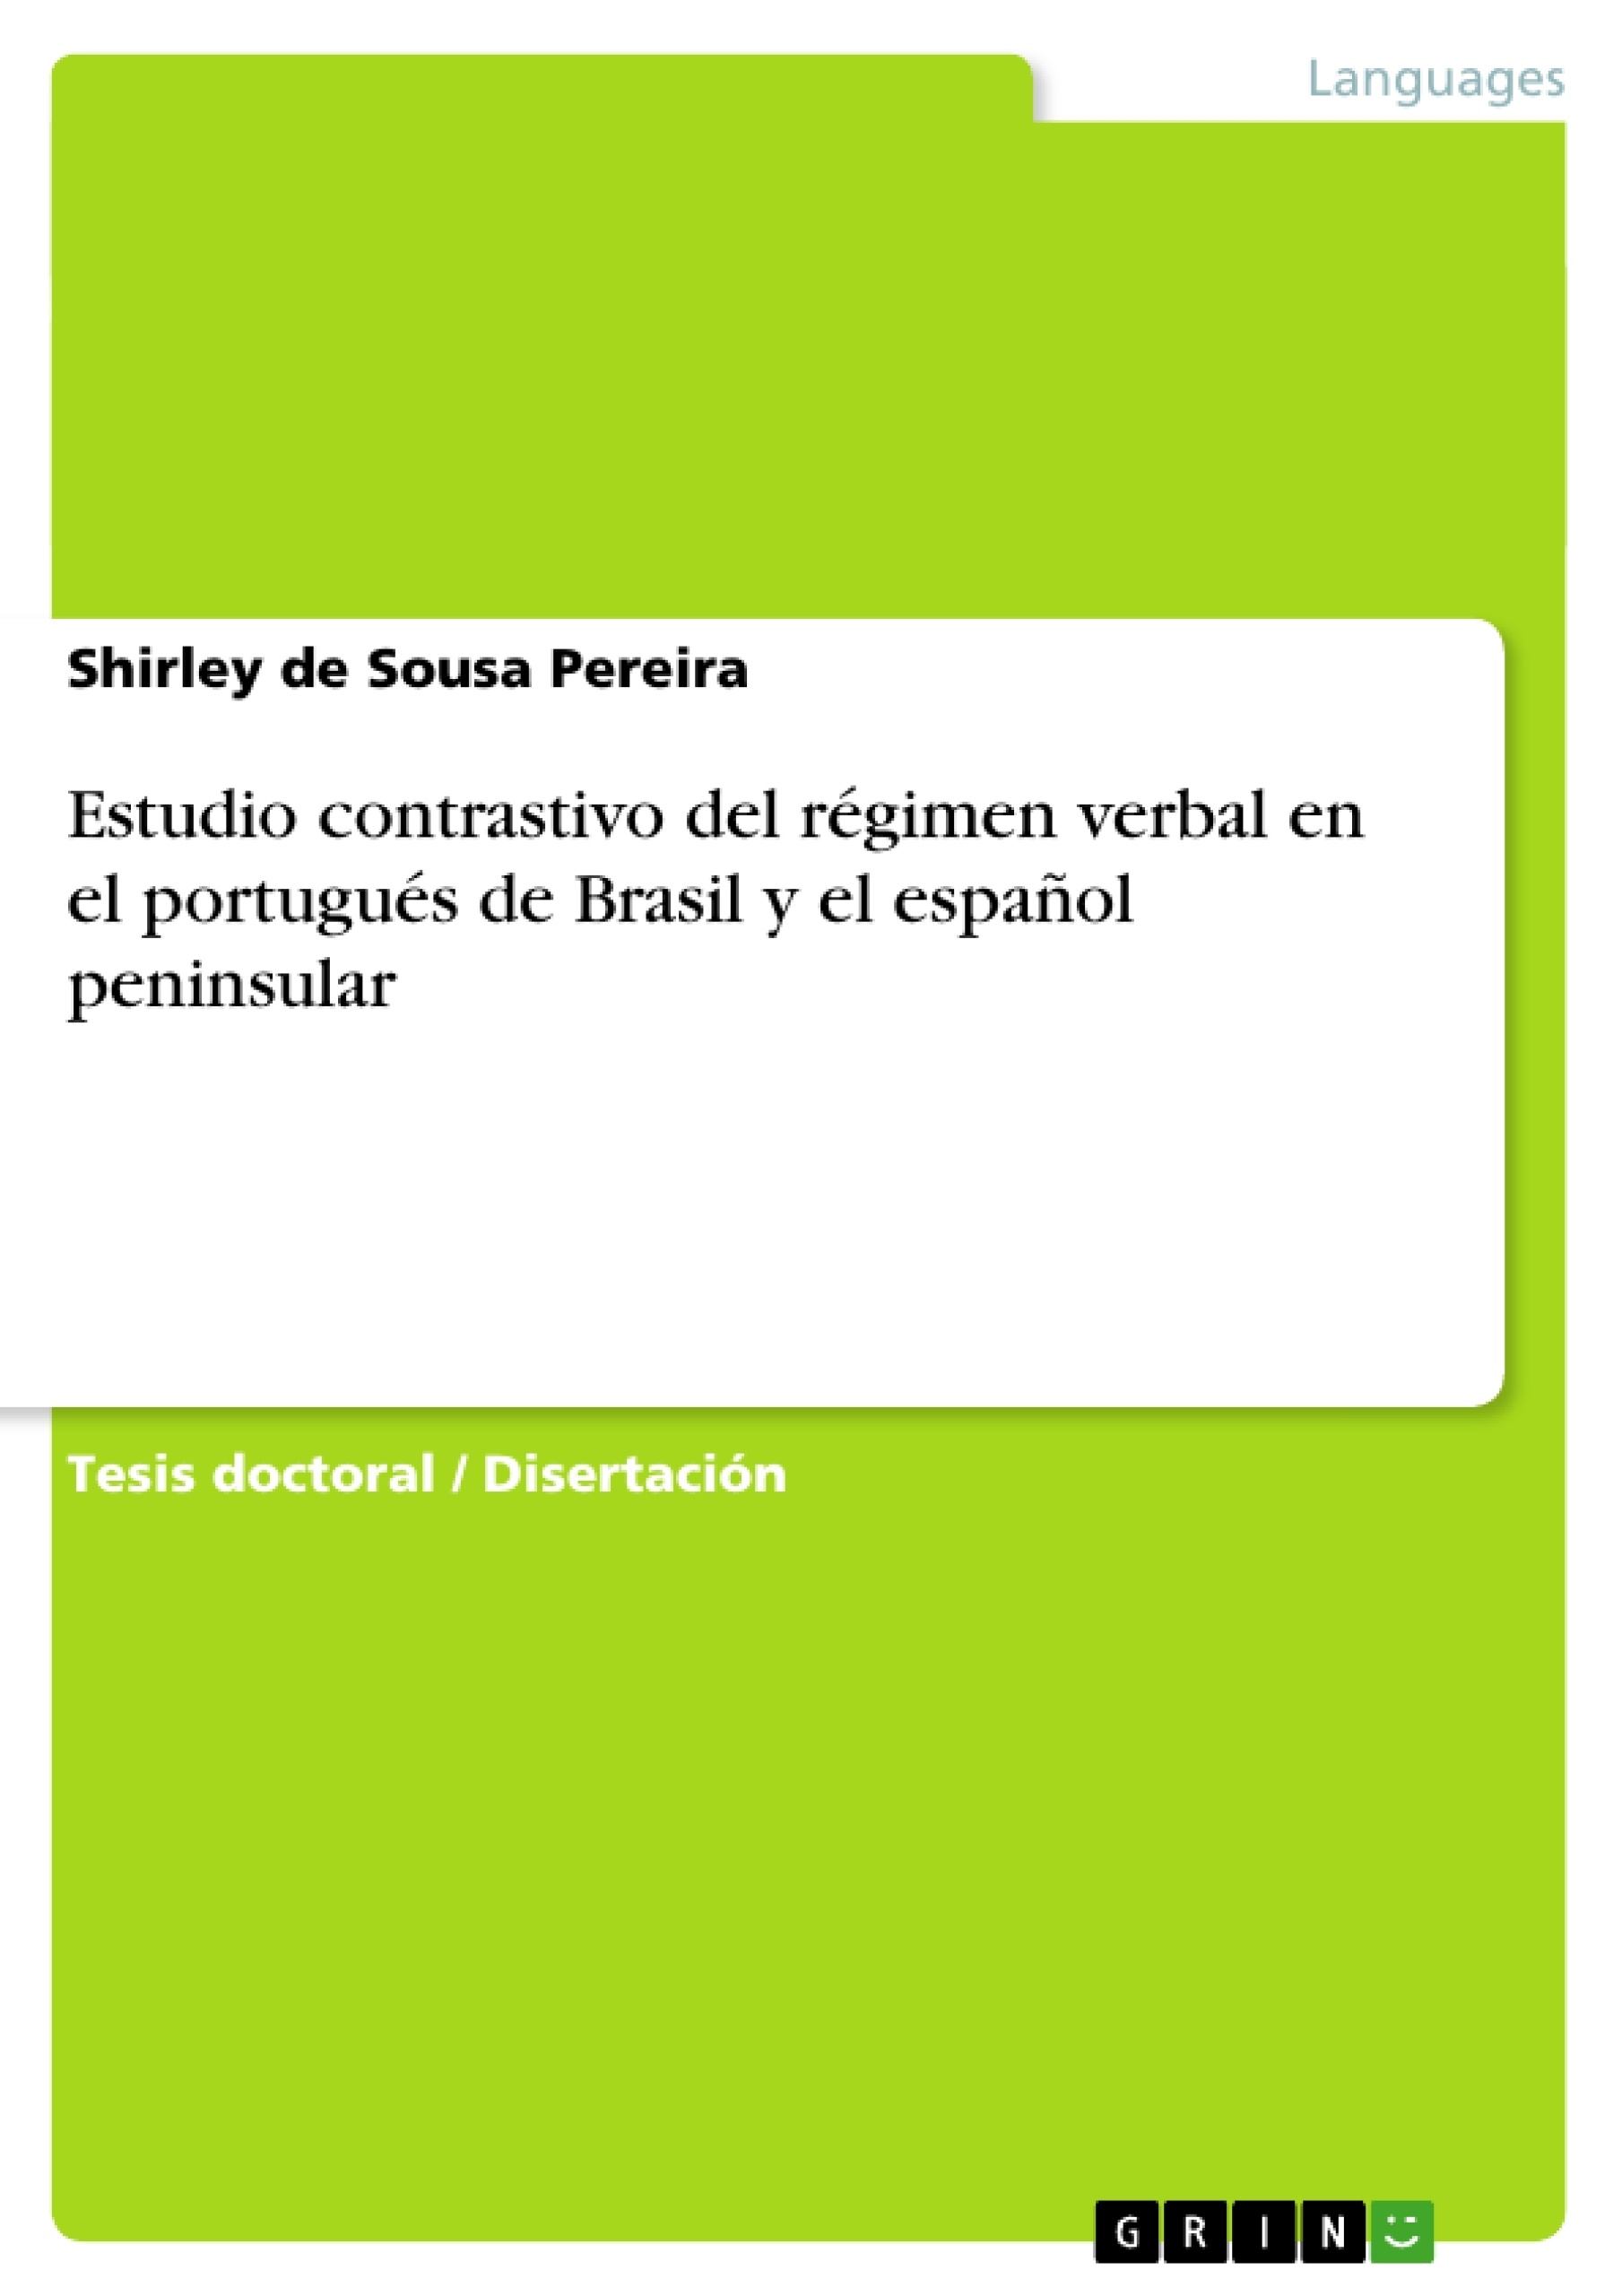 Titre: Estudio contrastivo del régimen verbal en el portugués de Brasil y el español peninsular